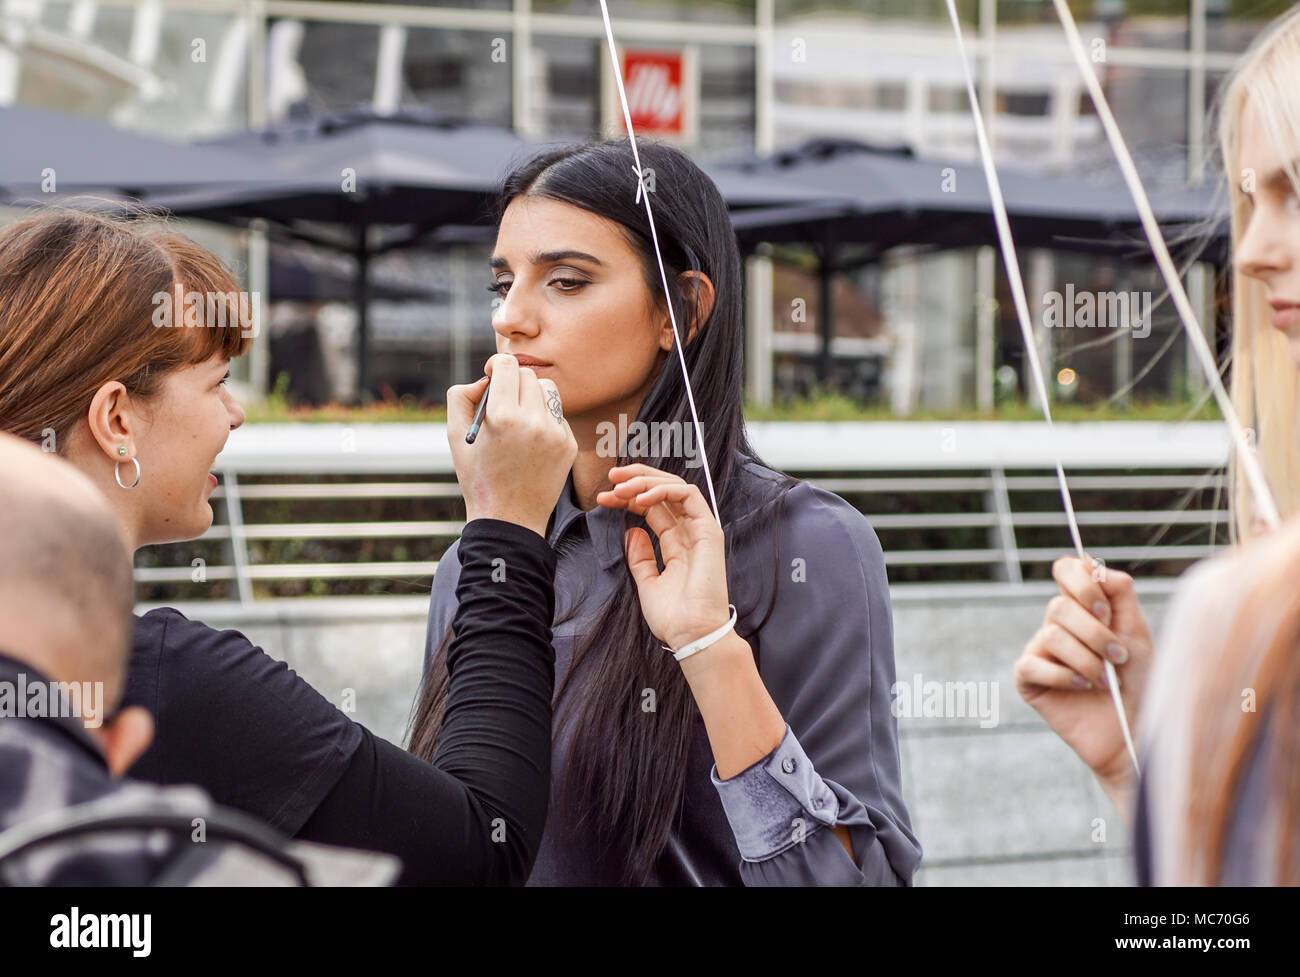 Mailand, Italien - 28 September: Menschen in Mailand auf der Modewoche, Italien am 28. SEPTEMBER 2017. Fashion Show Backstage mit Make-up-Artist und Friseur in der Straße Stockfoto